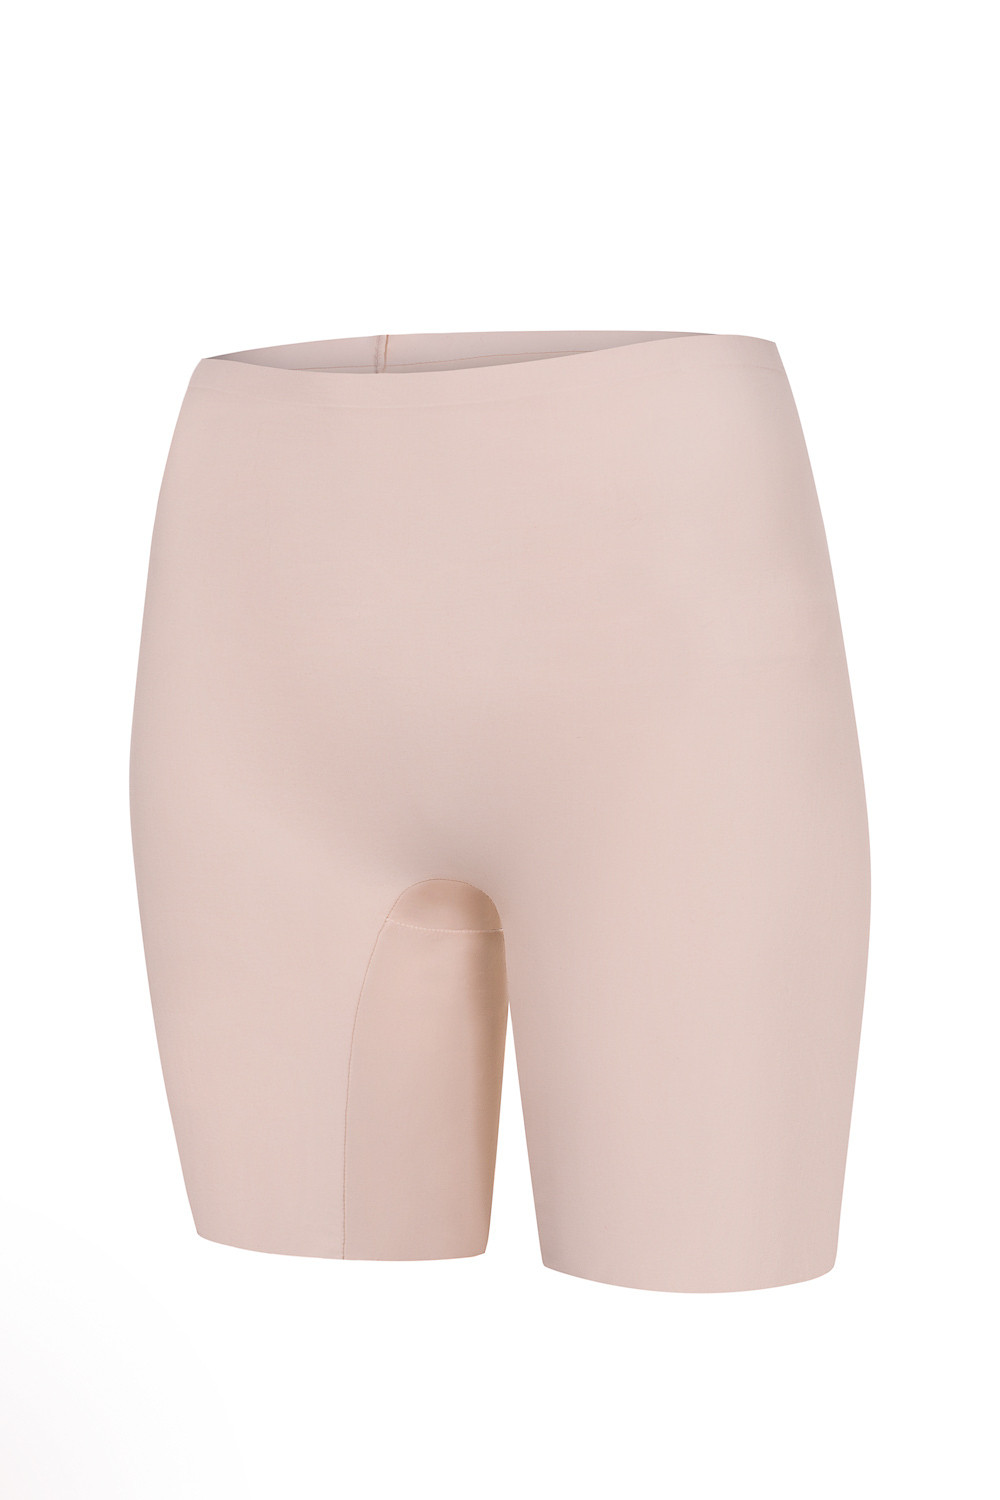 Tvarující dámské kalhotky Julimex Bermudy Comfort Barva: přírodní/neobvyklé.béžová, Velikost: M